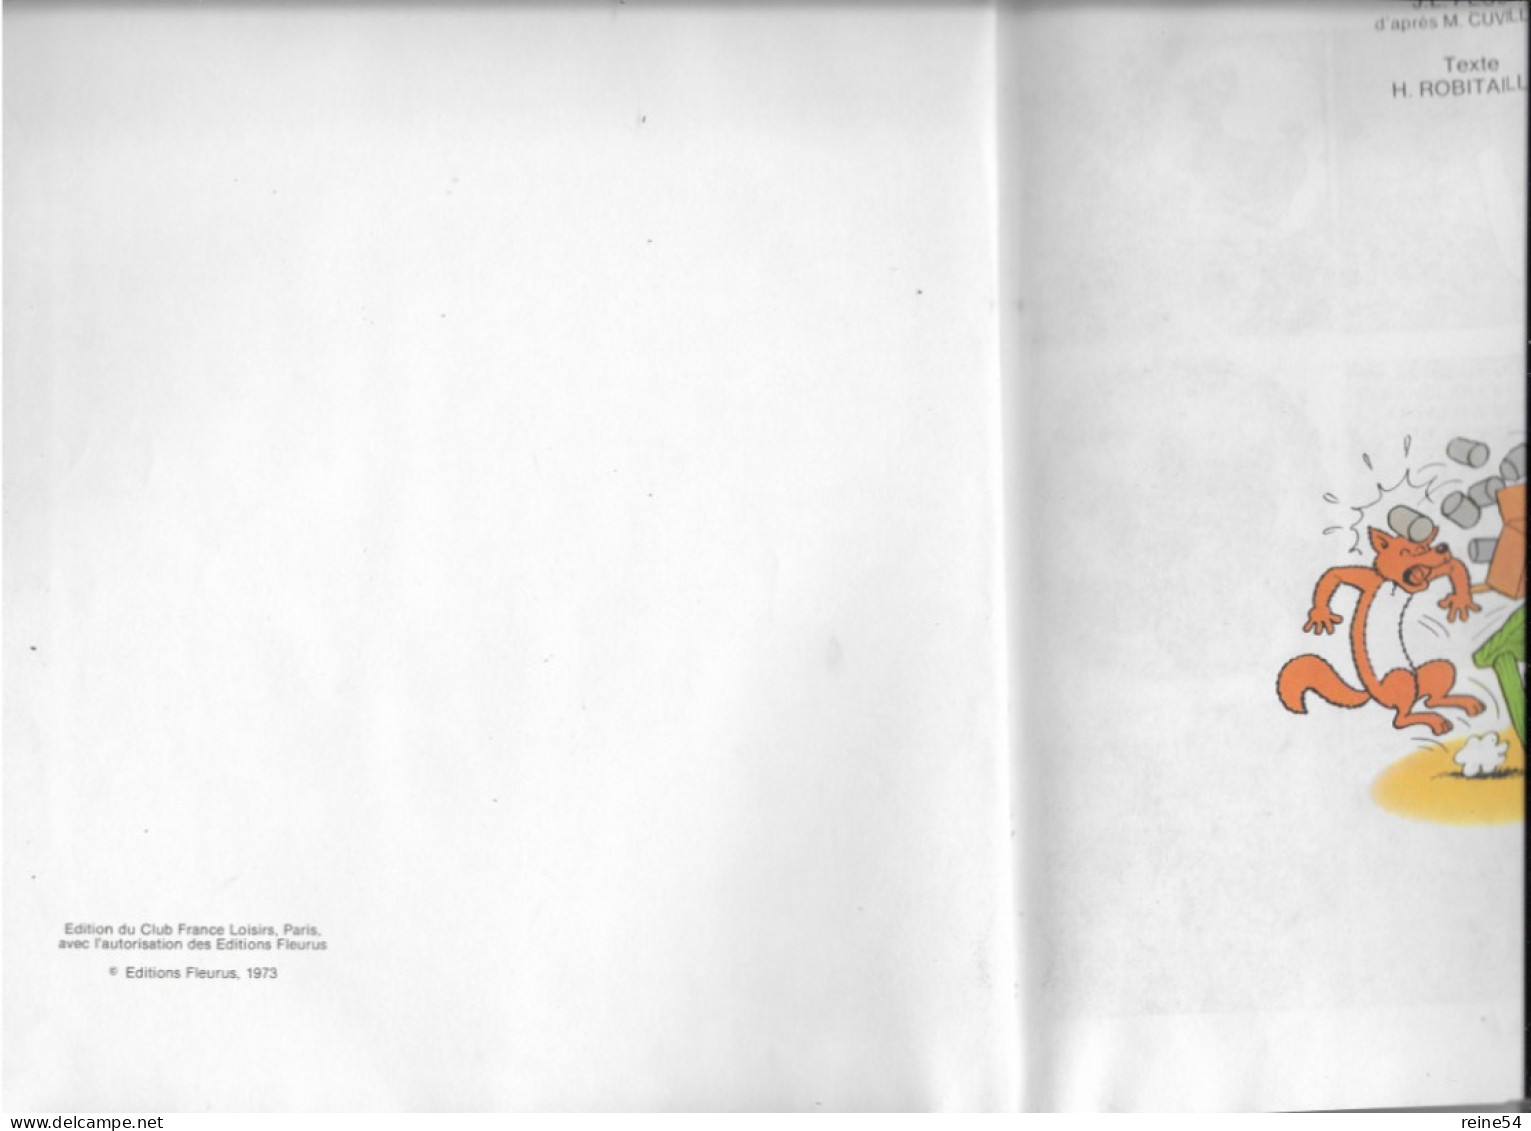 Sylvain Et Sylvette 1973 La Chasse Au Canard- Pesch-Robitaillie Edit.France Loisirs Avec L'autorisation Des Edit Fleurus - Sylvain Et Sylvette